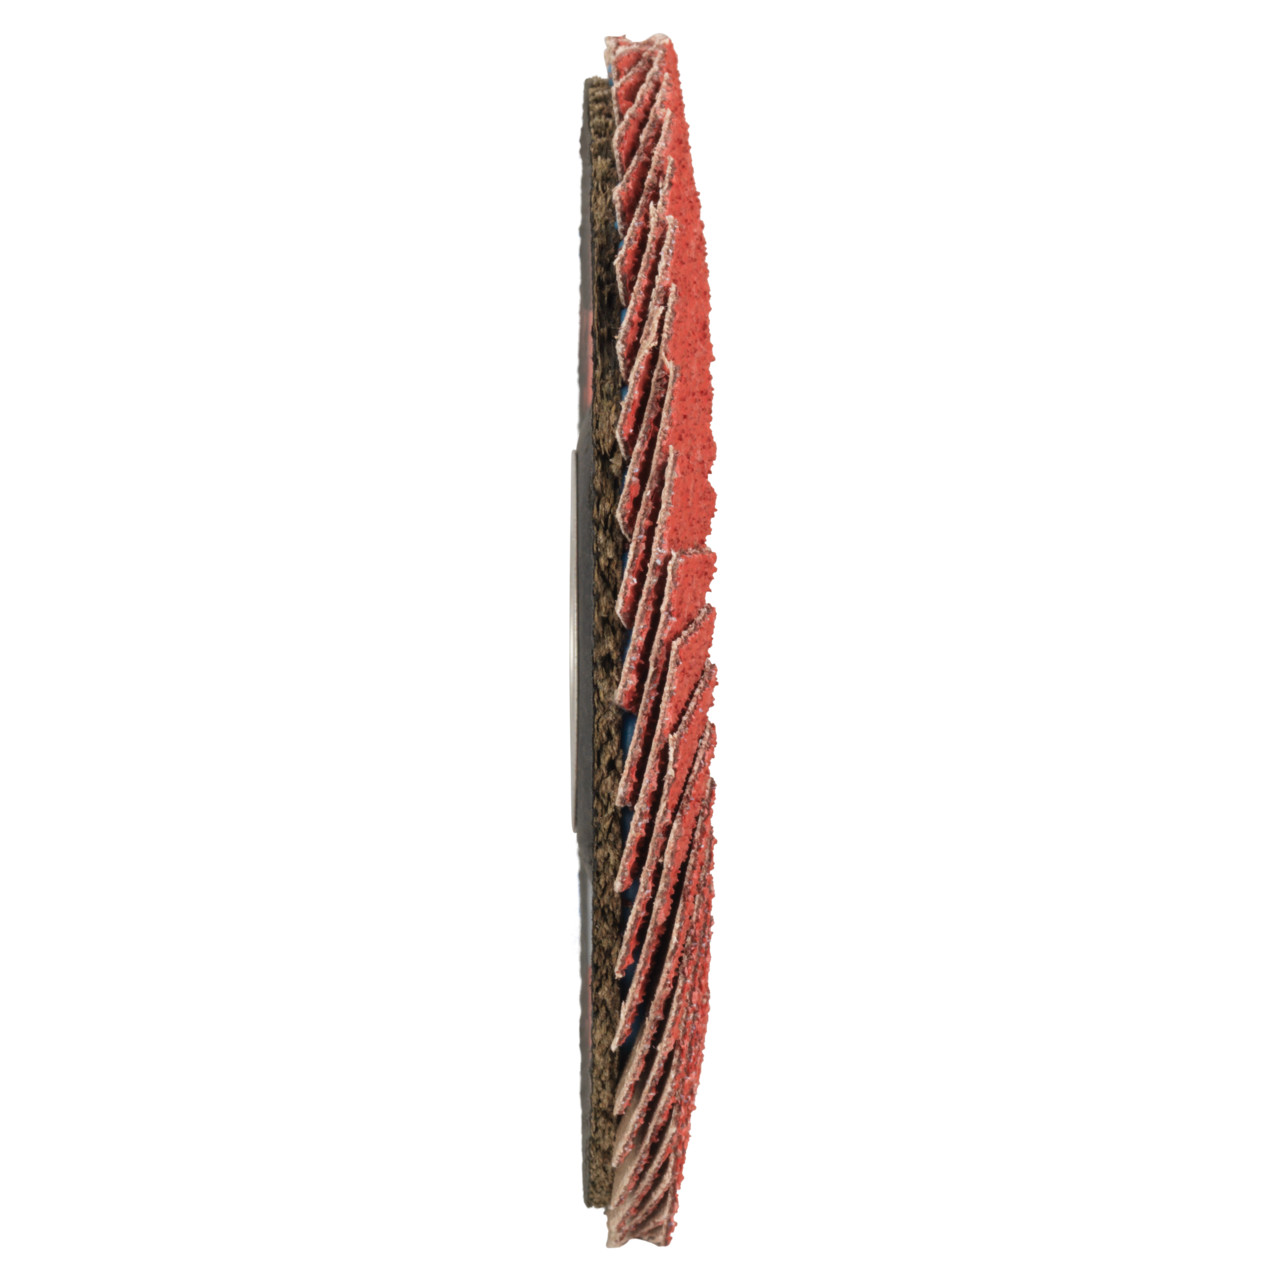 TYROLIT getande borgring DxH 178x22,23 CERAMIC voor roestvrij staal, P80, vorm: 27A - offset design (glasvezeldrager body design), Art. 34166686